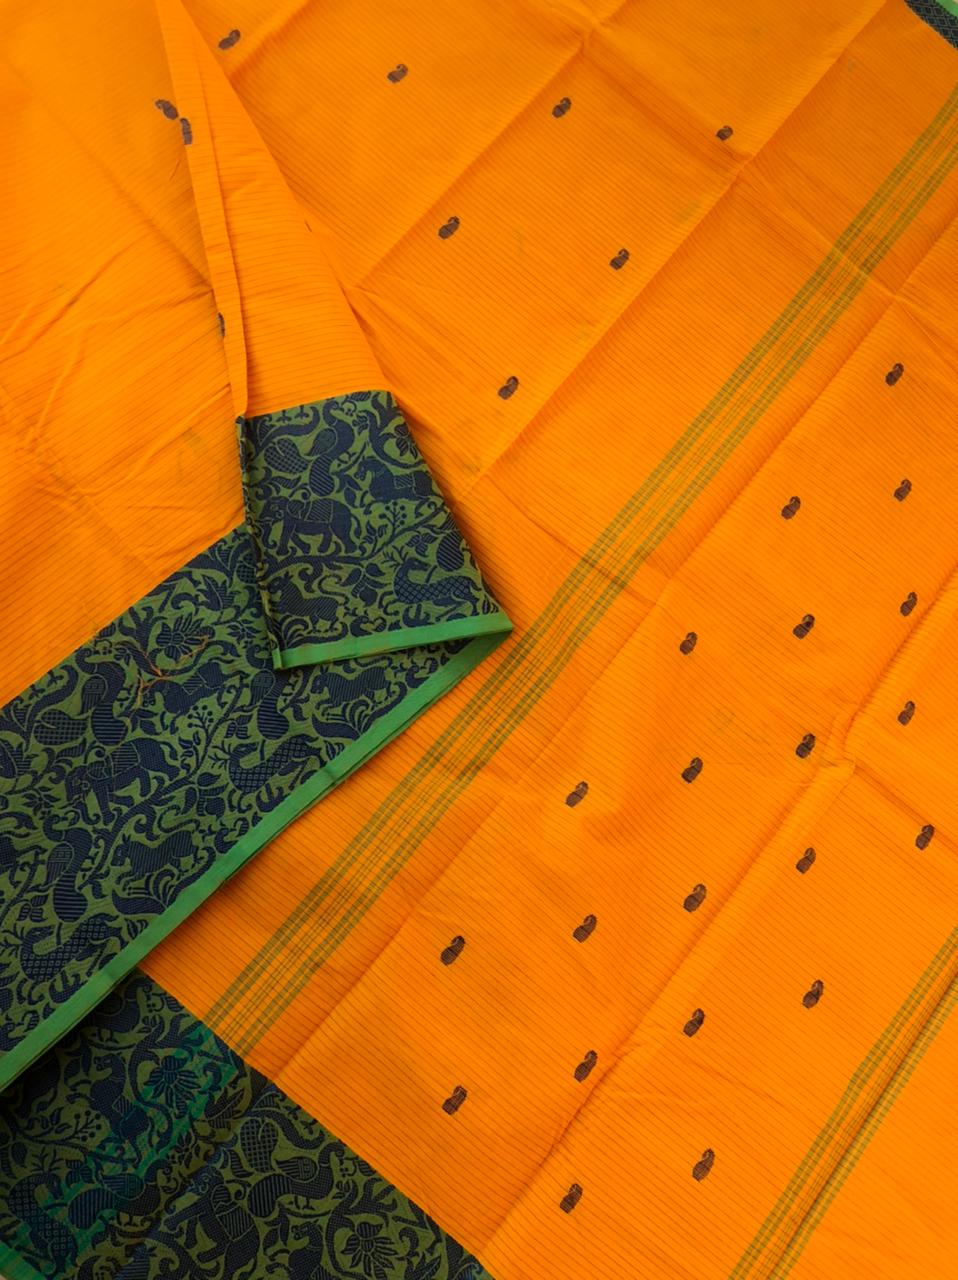 Woven Buttas on Kanchi Cottons - orange with vanasingaram woven borders